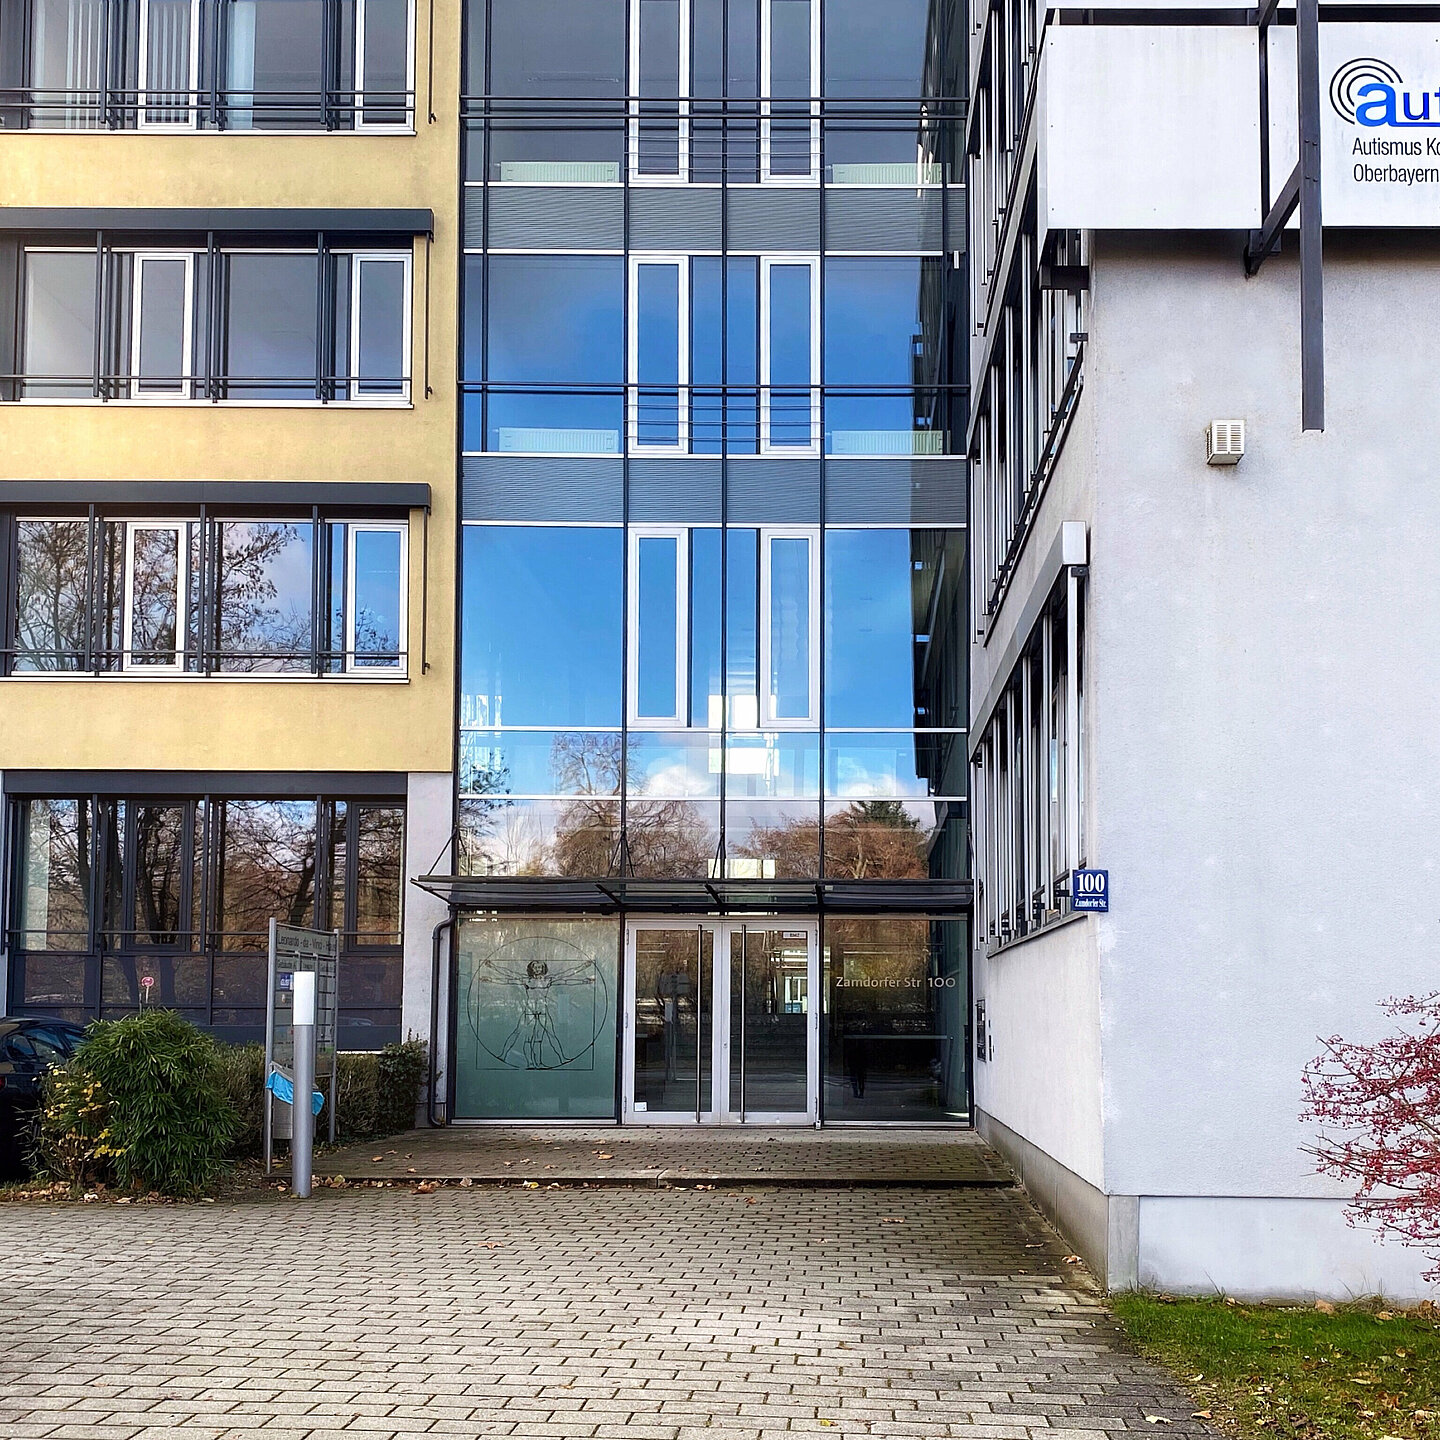 Abgebildet ist das Autismuskompetenzzentrum Oberbayern (Außenansicht des Gebäudes).